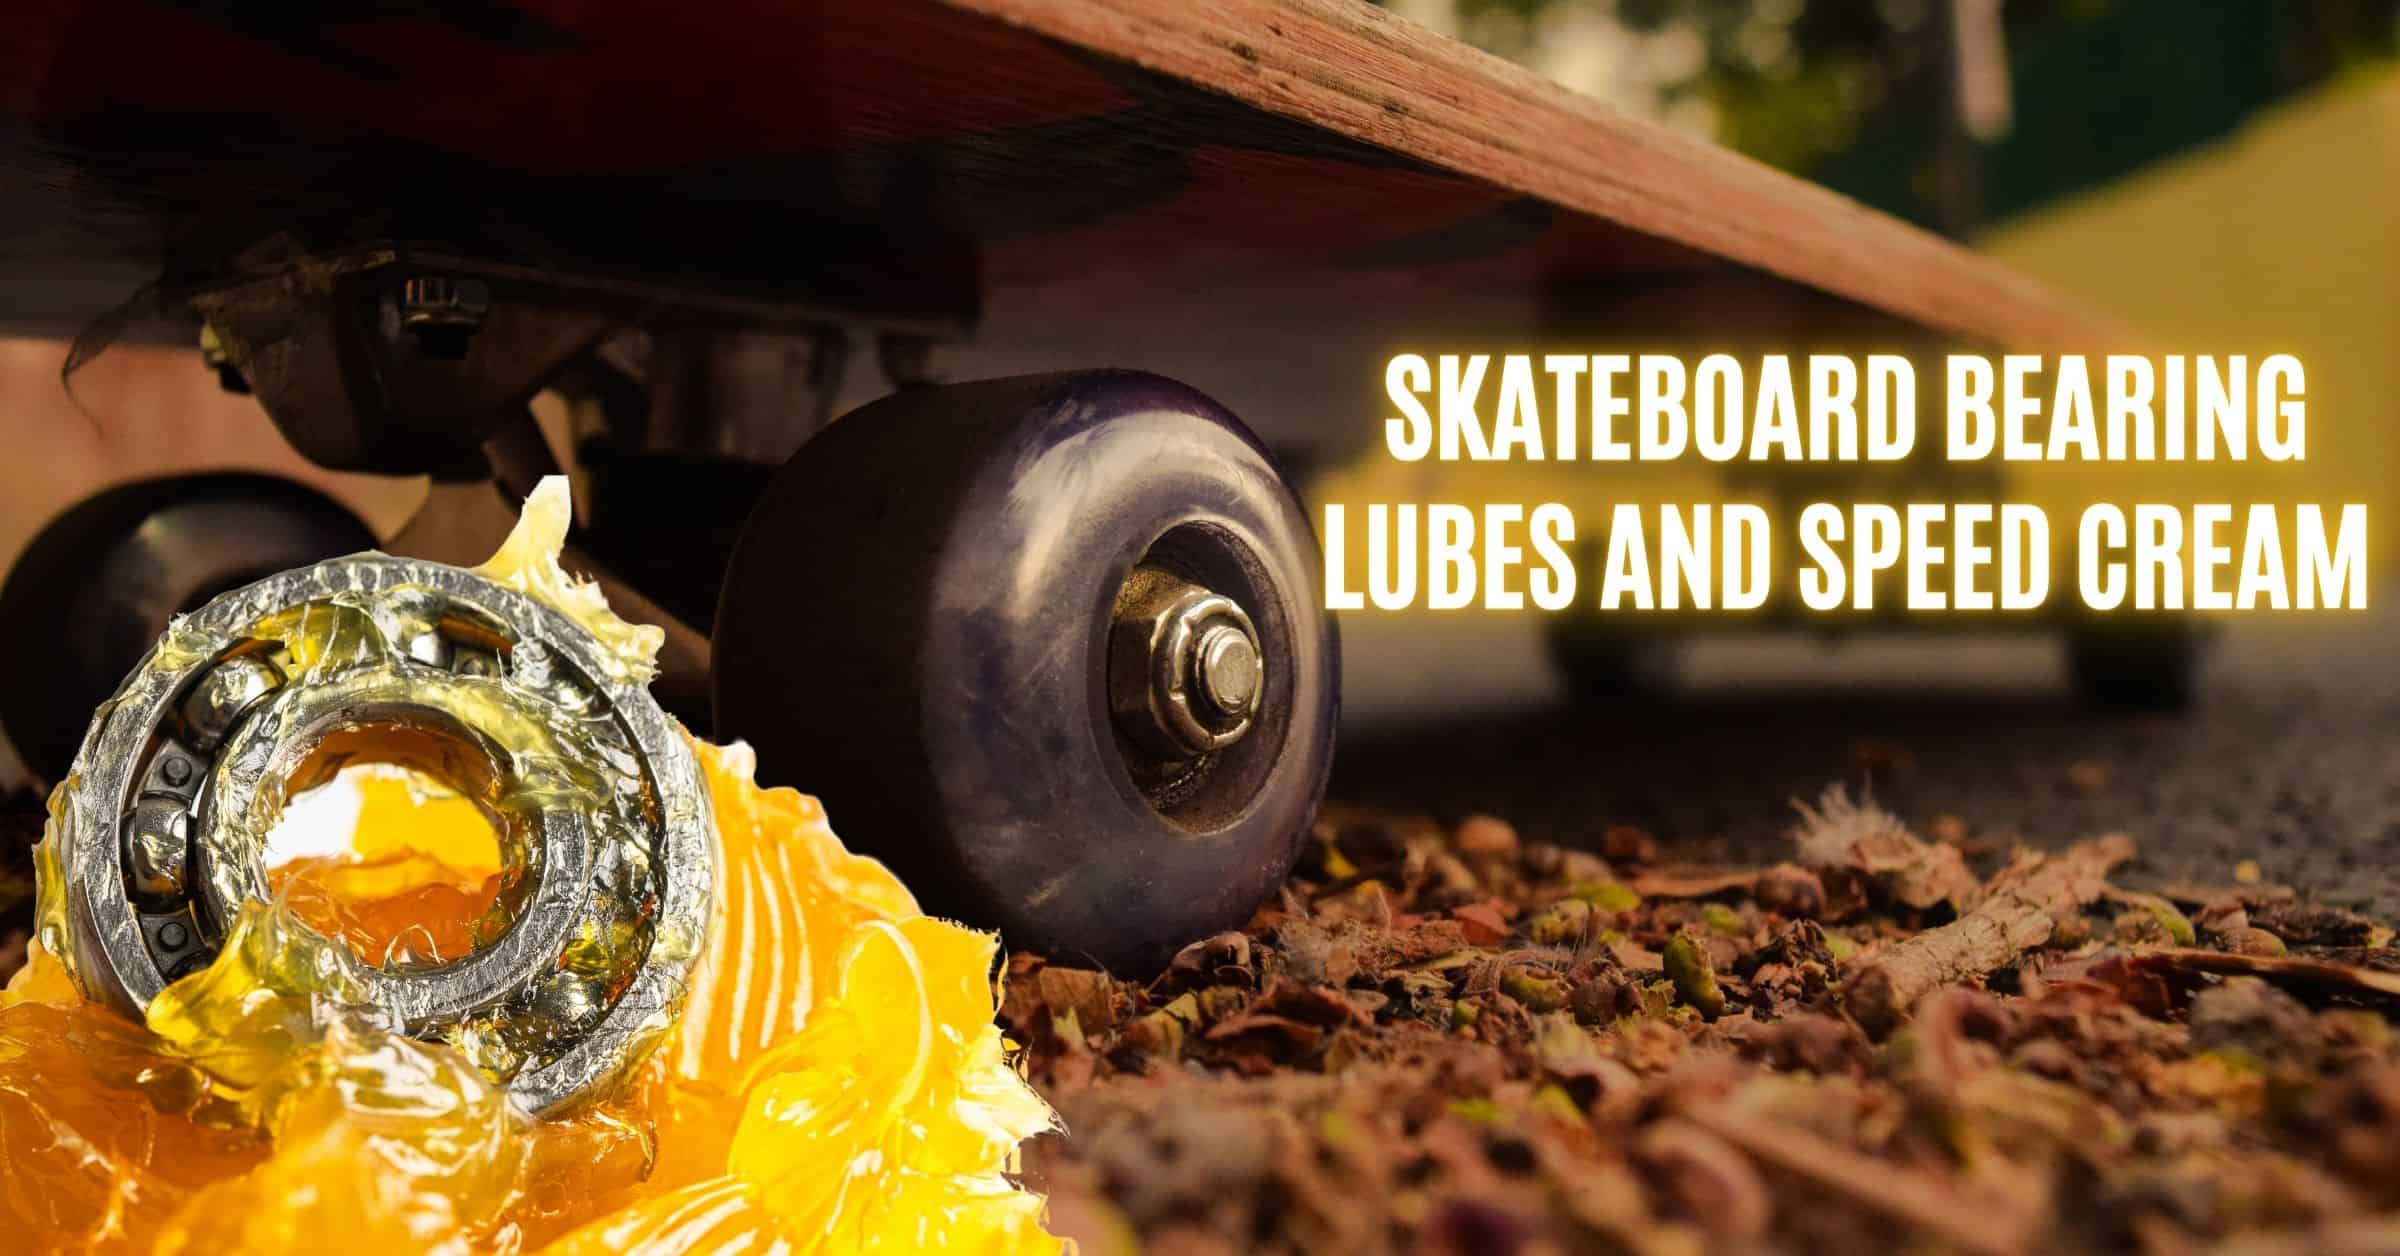 lubricant for skateboard bearing, skateboard bearing lube, grease skateboard, skateboard speed cream